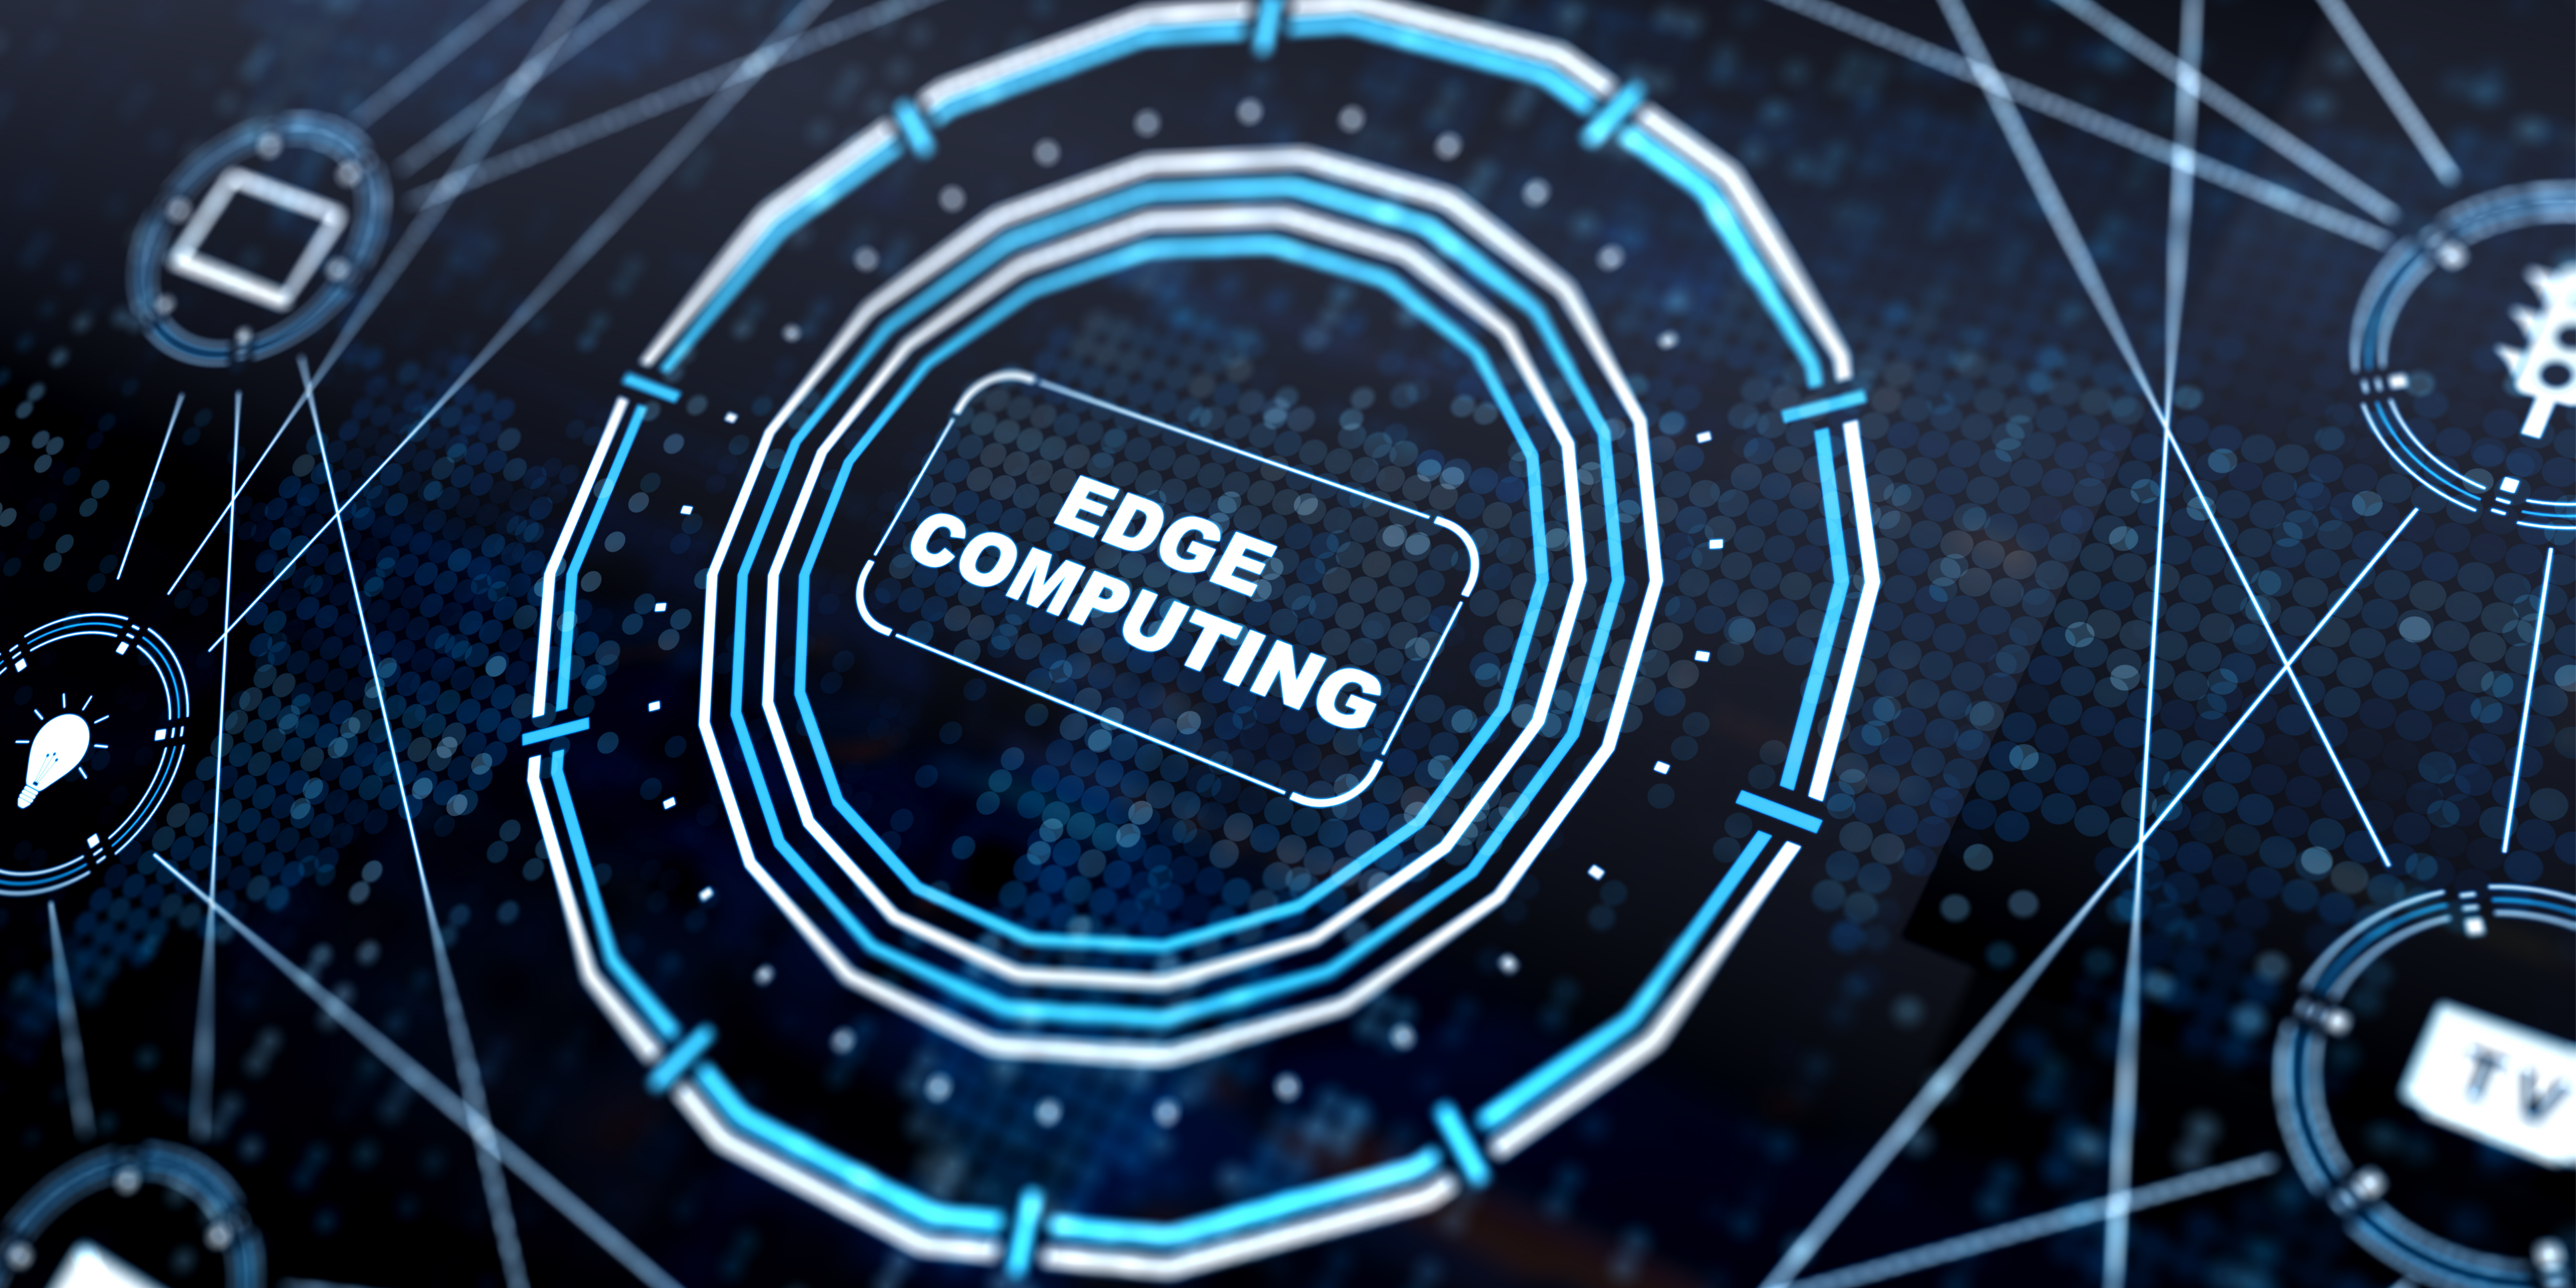 Edge computig - Zetta